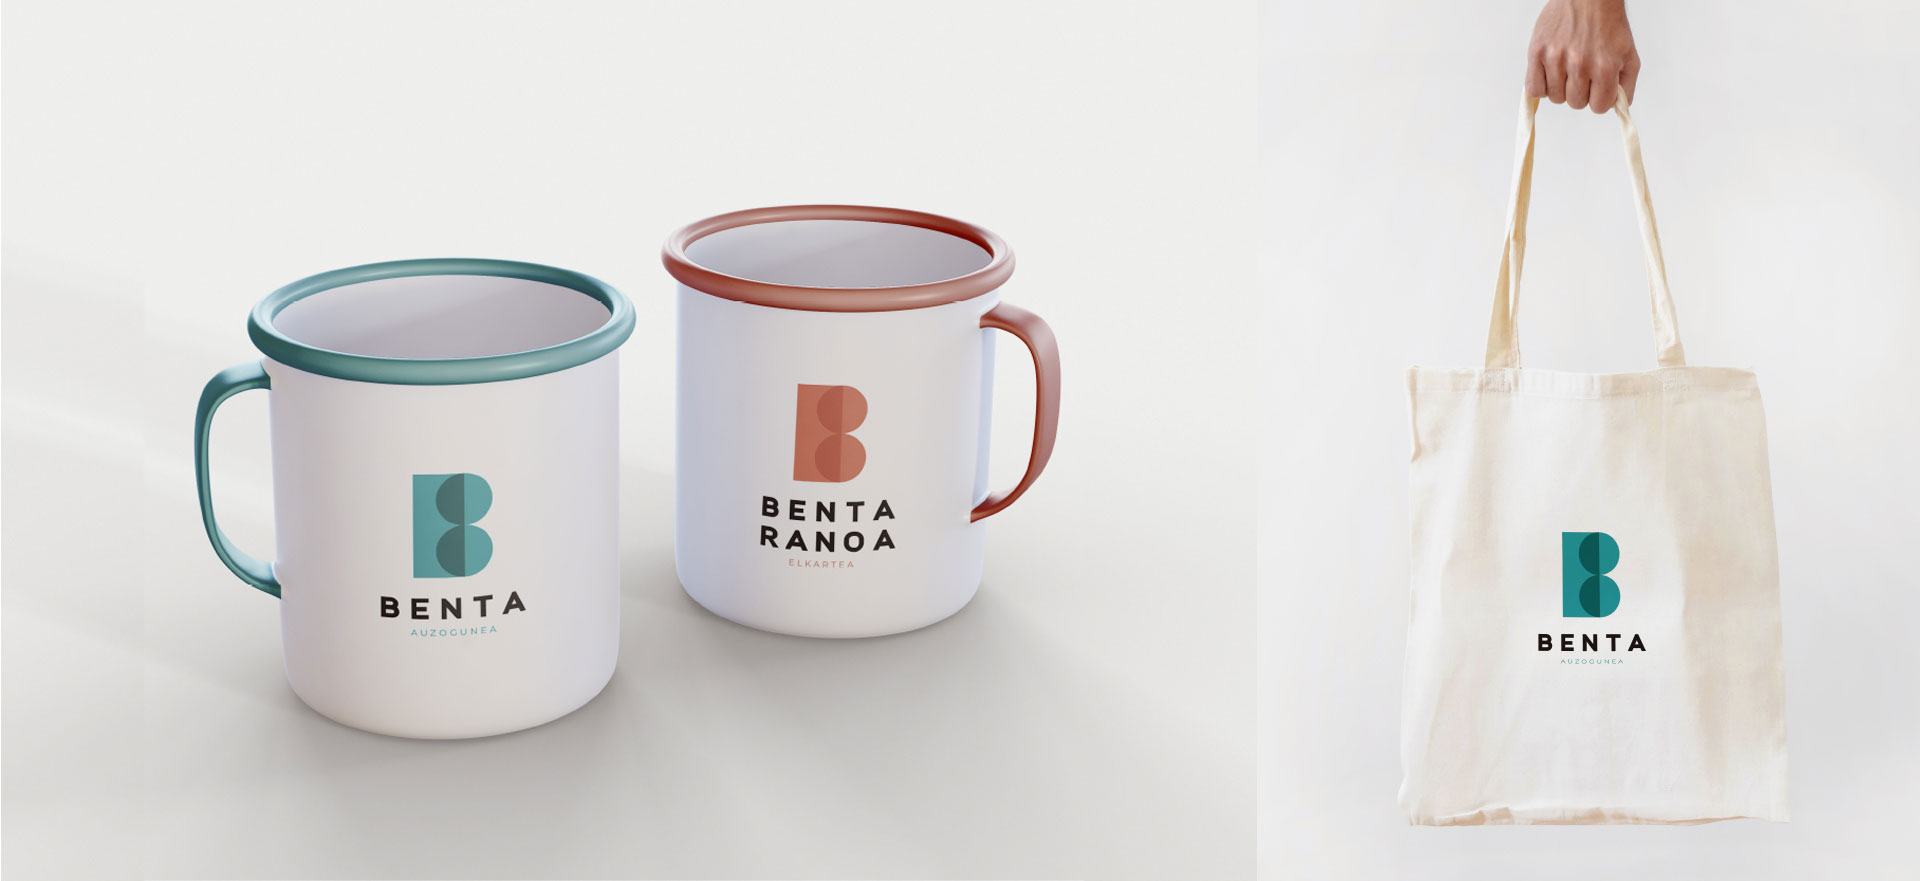 Branding Benta y Bentaranoa